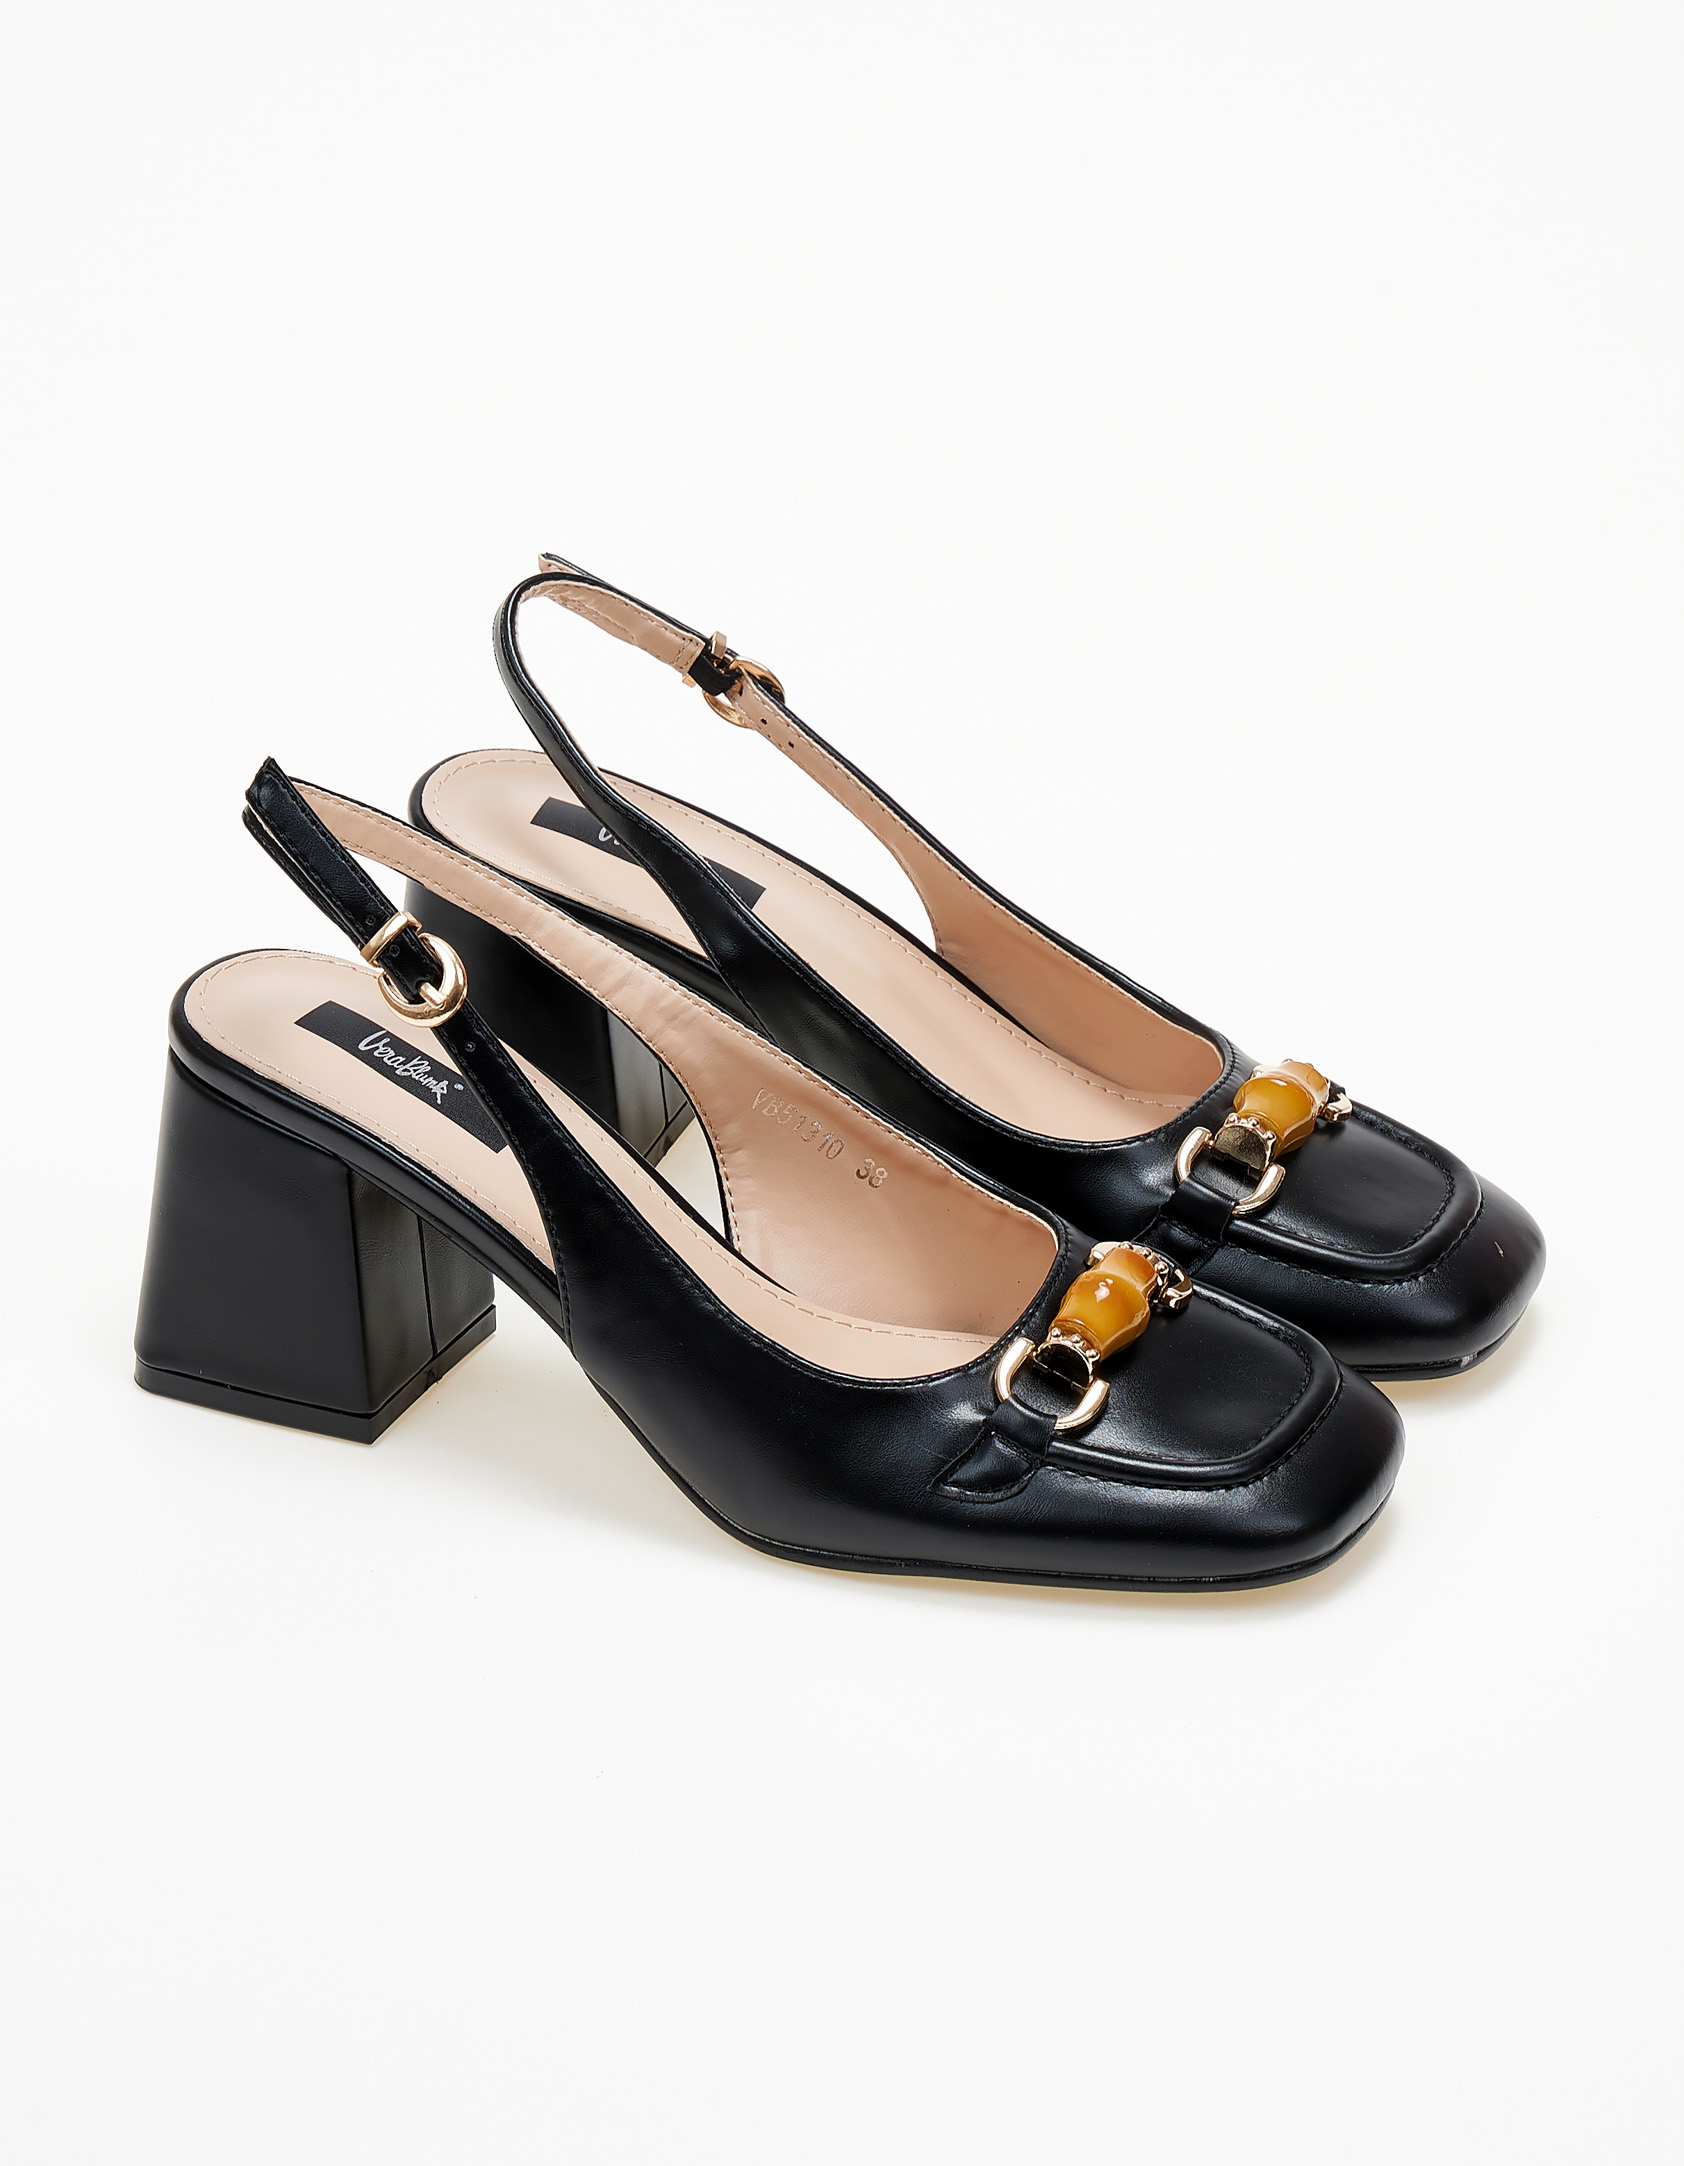 Παπούτσια > Πέδιλα Mules σε καρέ γραμμή με χοντρό τακούνι - Μαύρο